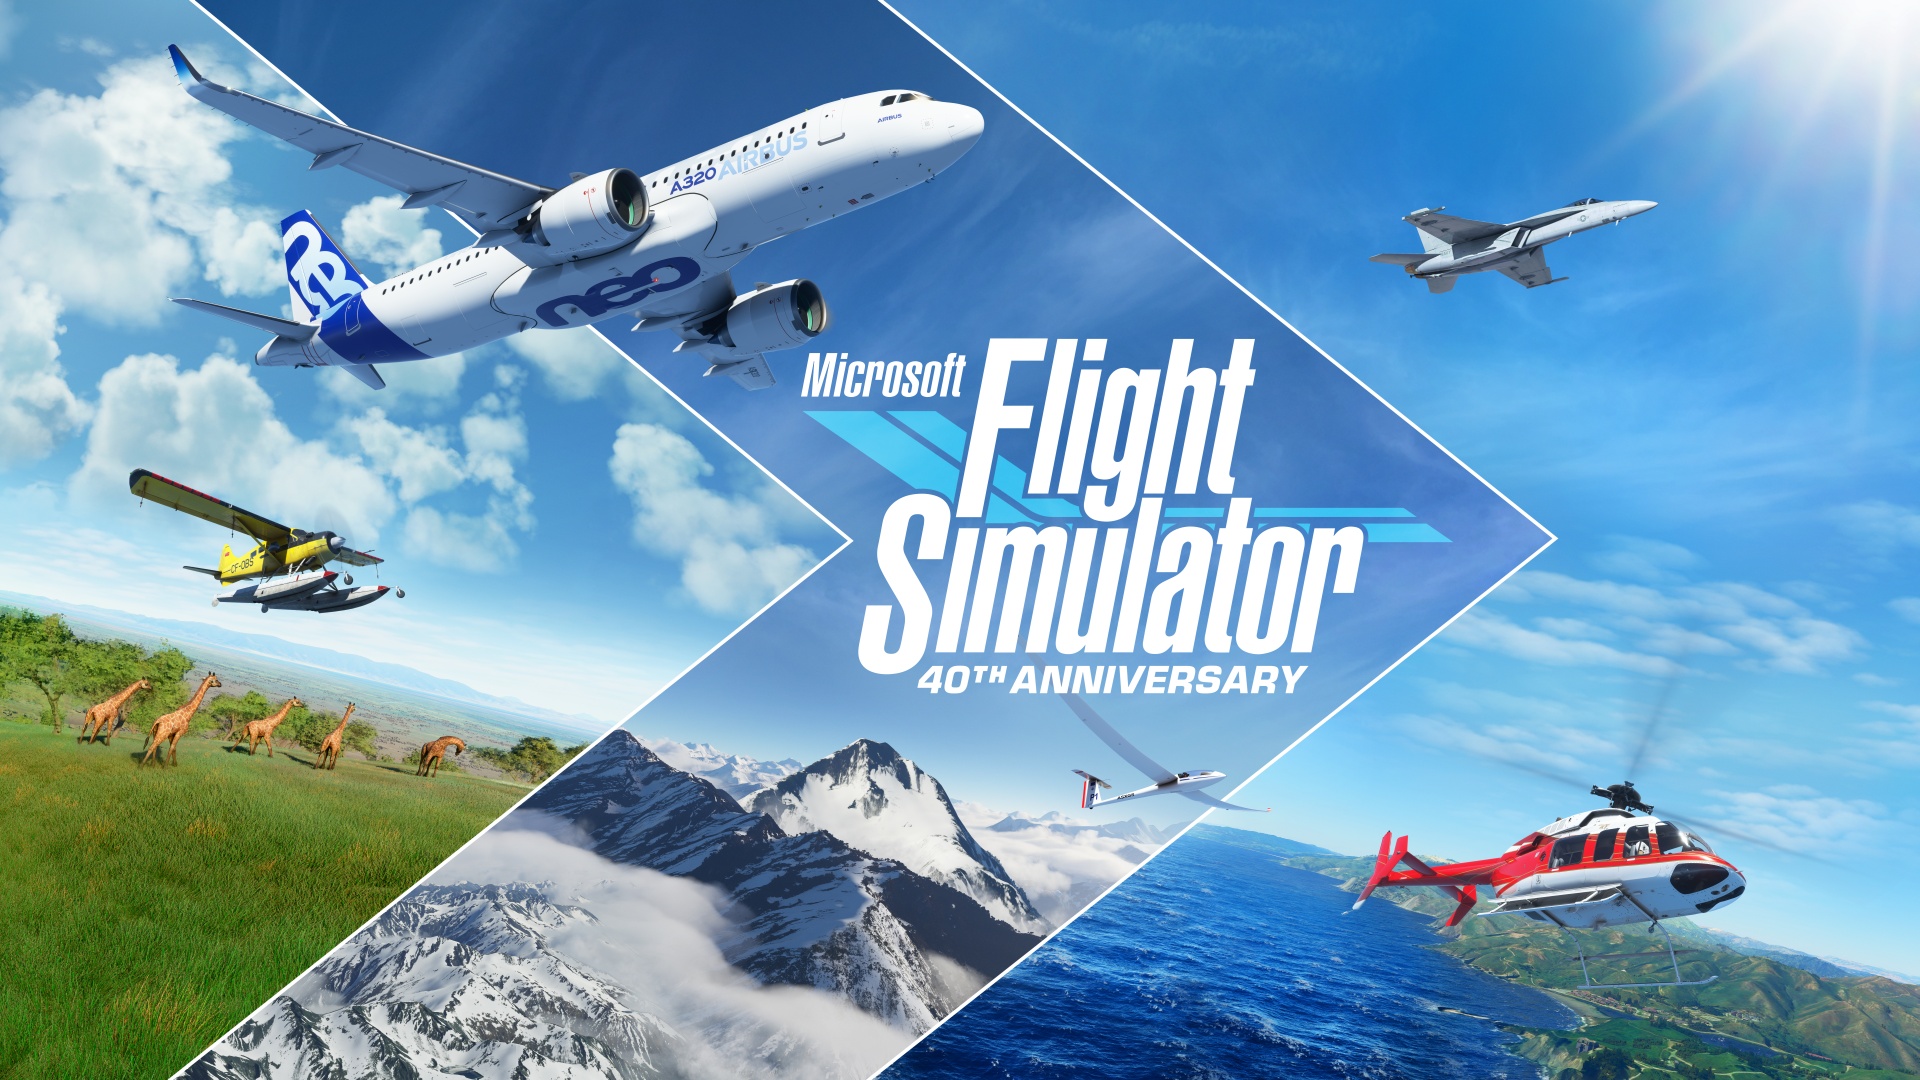 Microsoft Flight Simulator célèbre une étape cruciale de son histoire avec la sortie de l’Édition 40ème Anniversaire du jeu